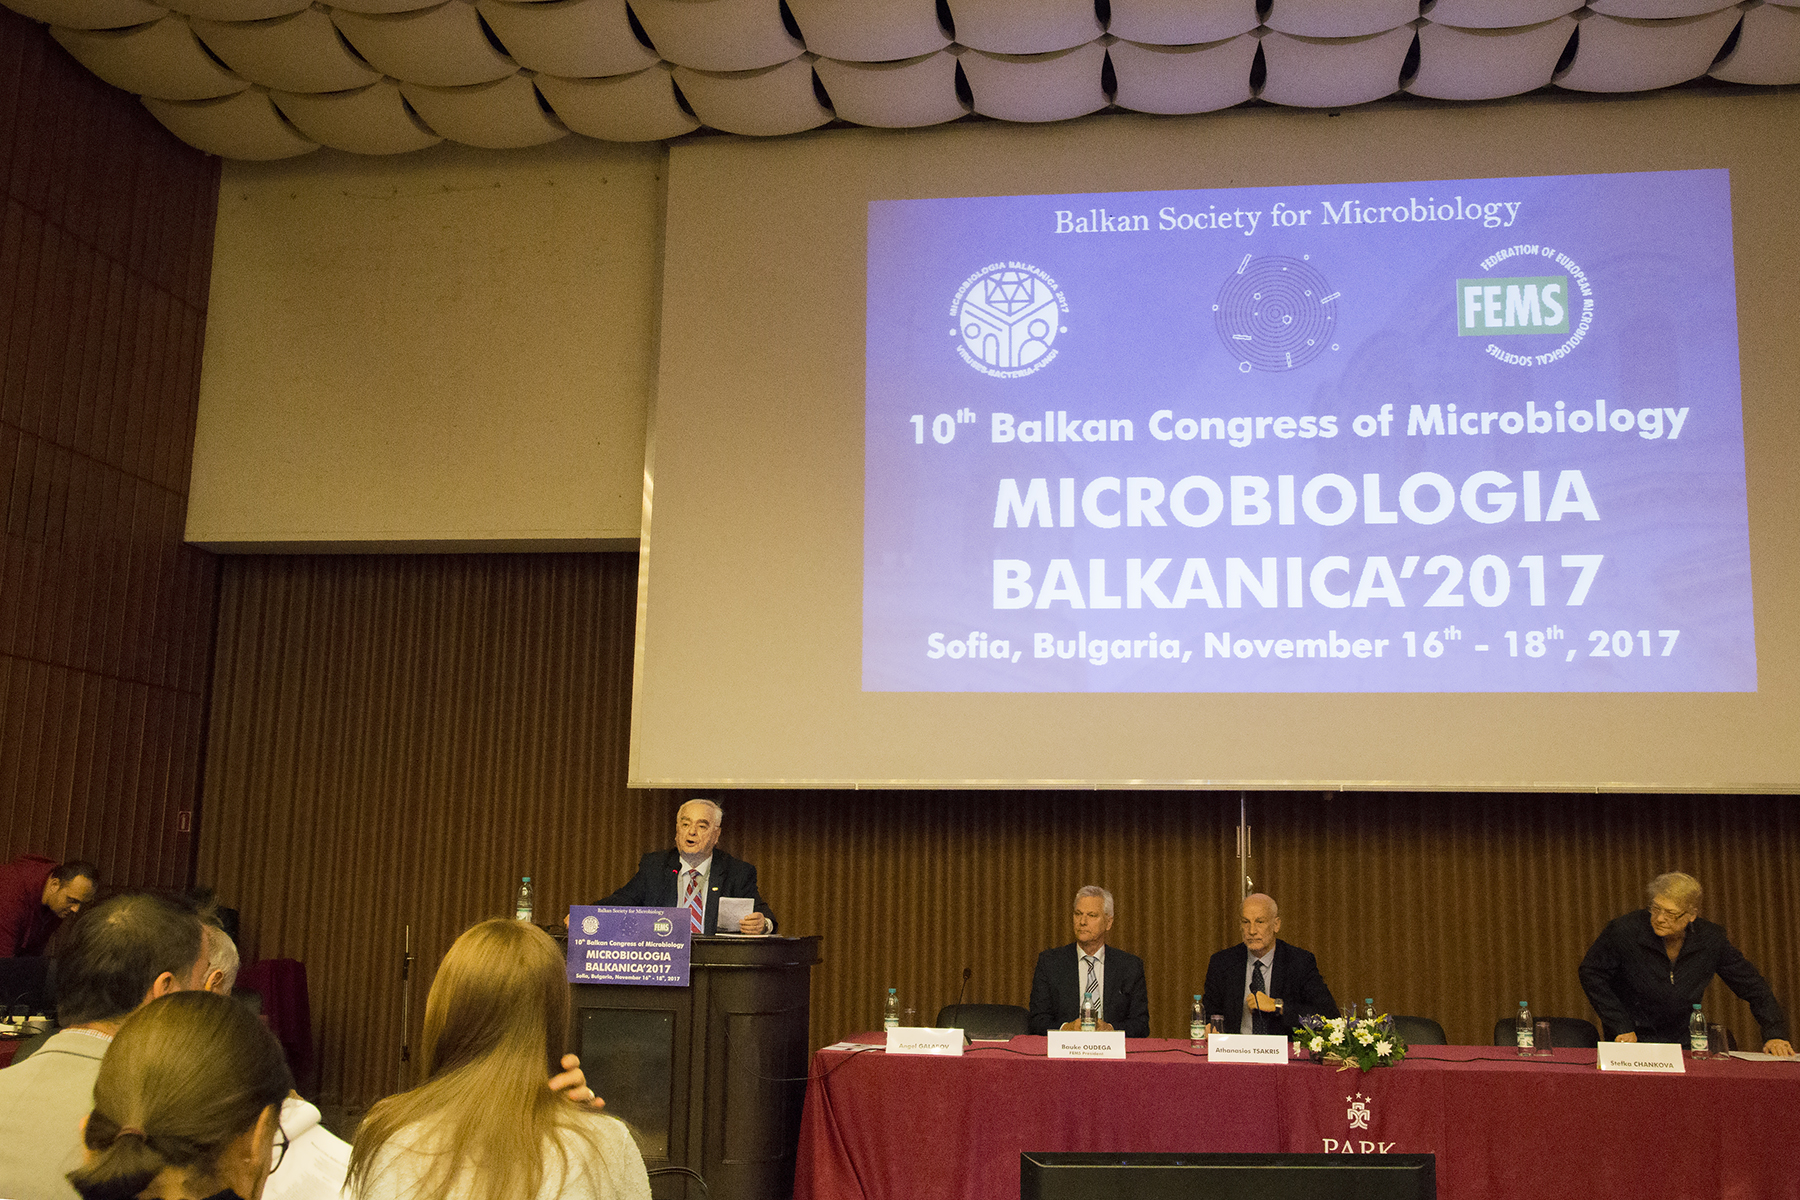 10-ти Балкански конгрес по микробиология/Микробиология Балканика, София,  16-18 ноември, 2017 г.